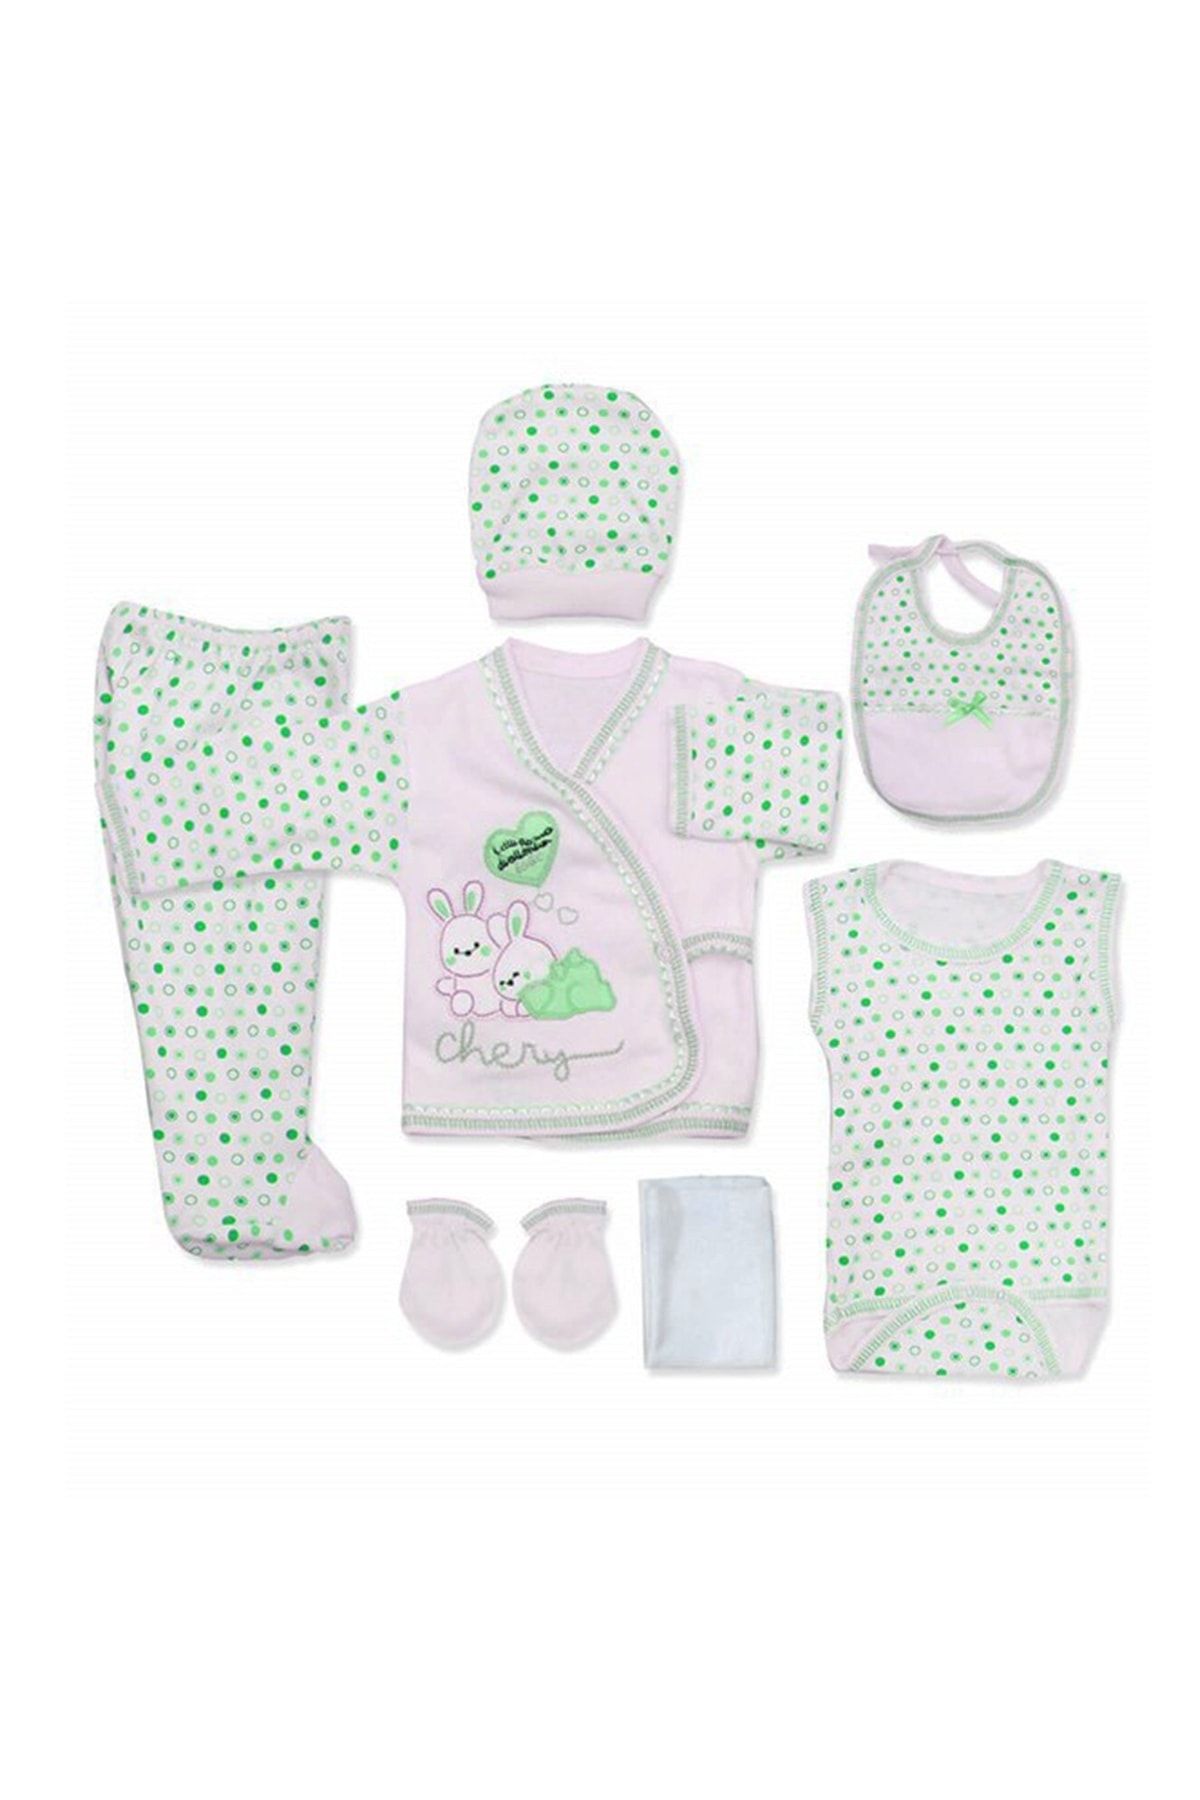 Bombinoo Bebek 7 li Hastane Çıkışı Yeni Doğan Zıbın Set Yeşil Tavşan t7yeşil